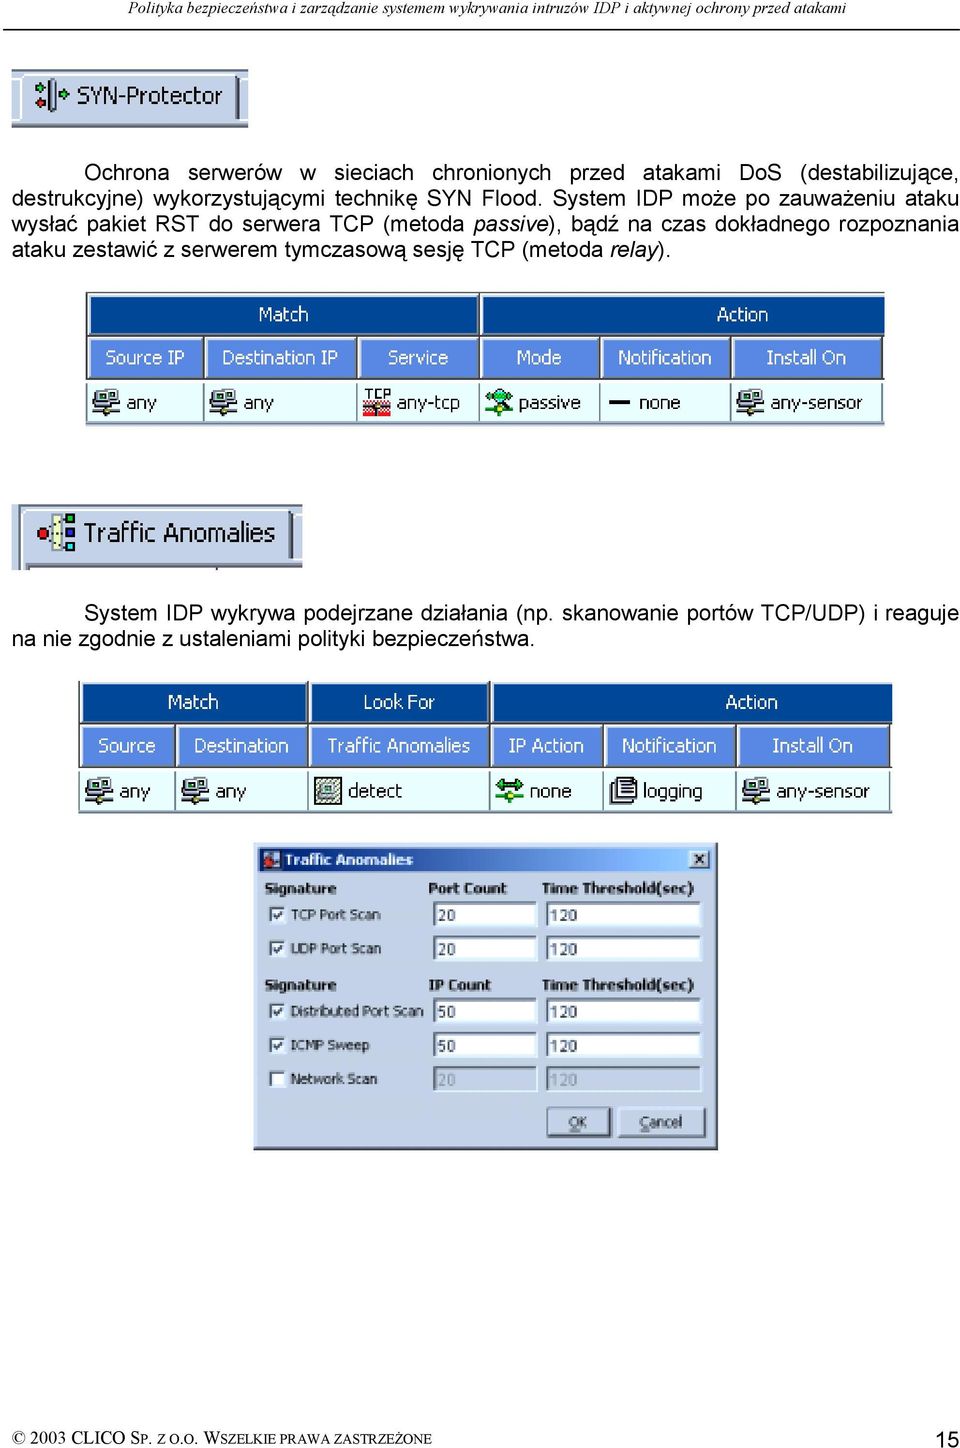 System IDP może po zauważeniu ataku wysłać pakiet RST do serwera TCP (metoda passive), bądź na czas dokładnego rozpoznania